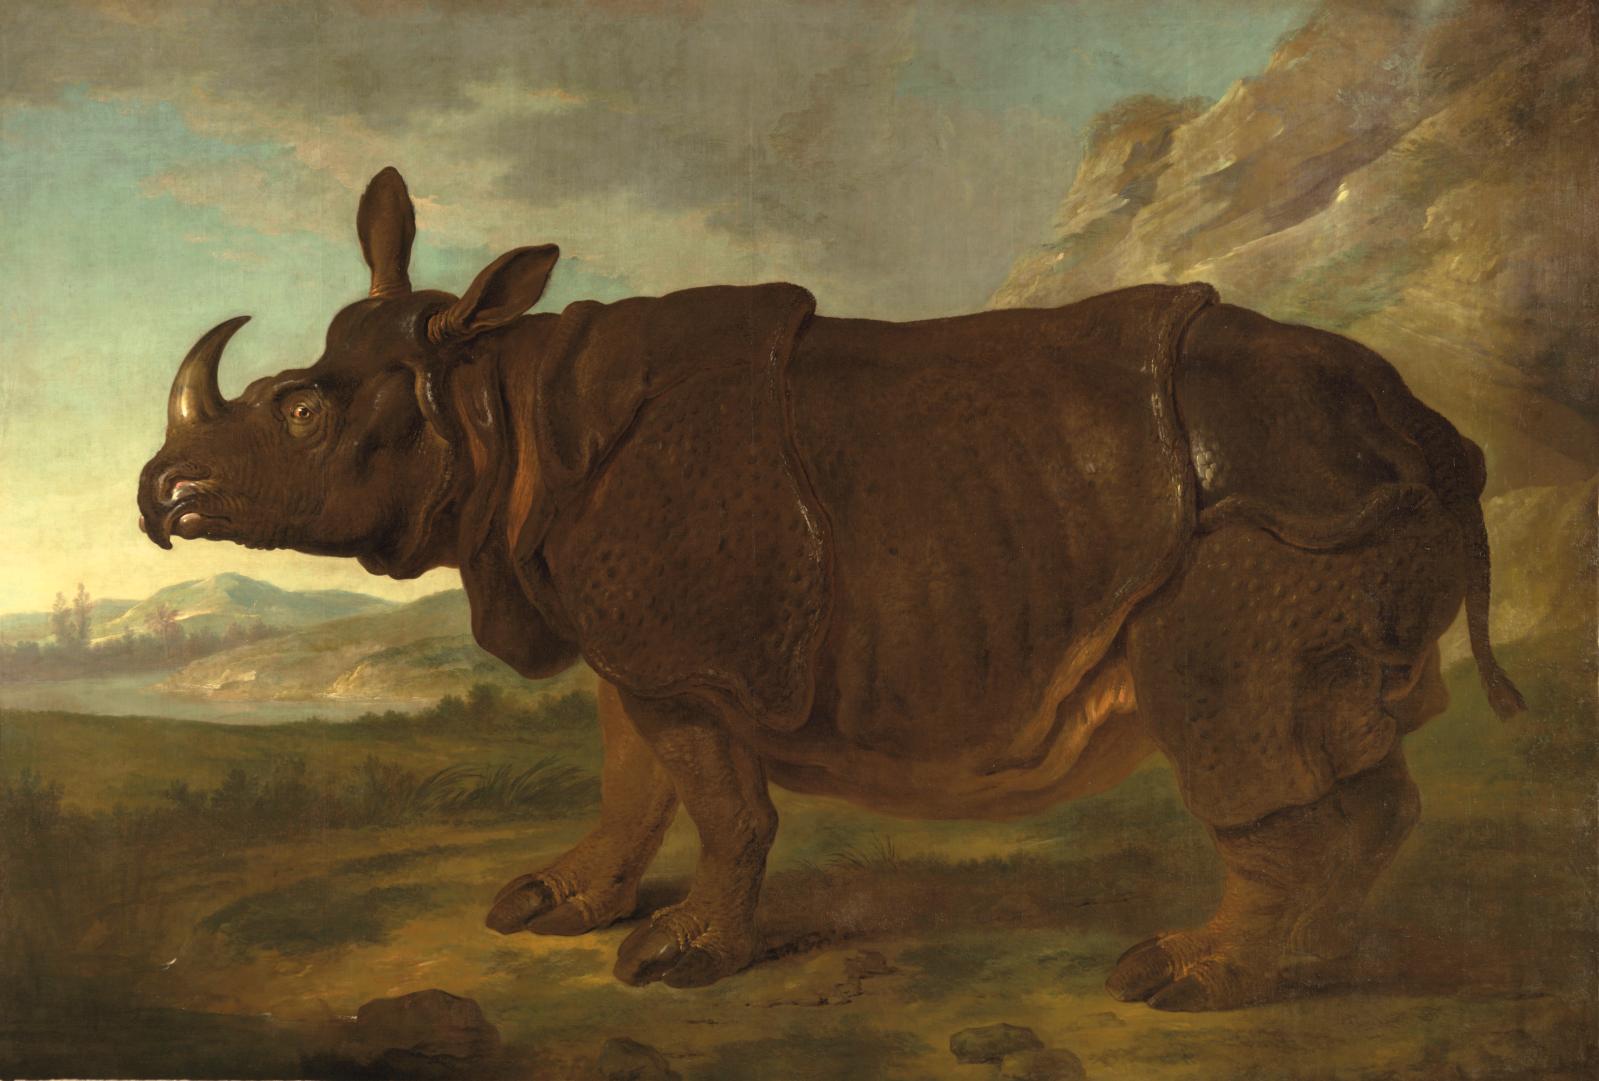 Clara le rhinocéros au Rijksmuseum d’Amsterdam